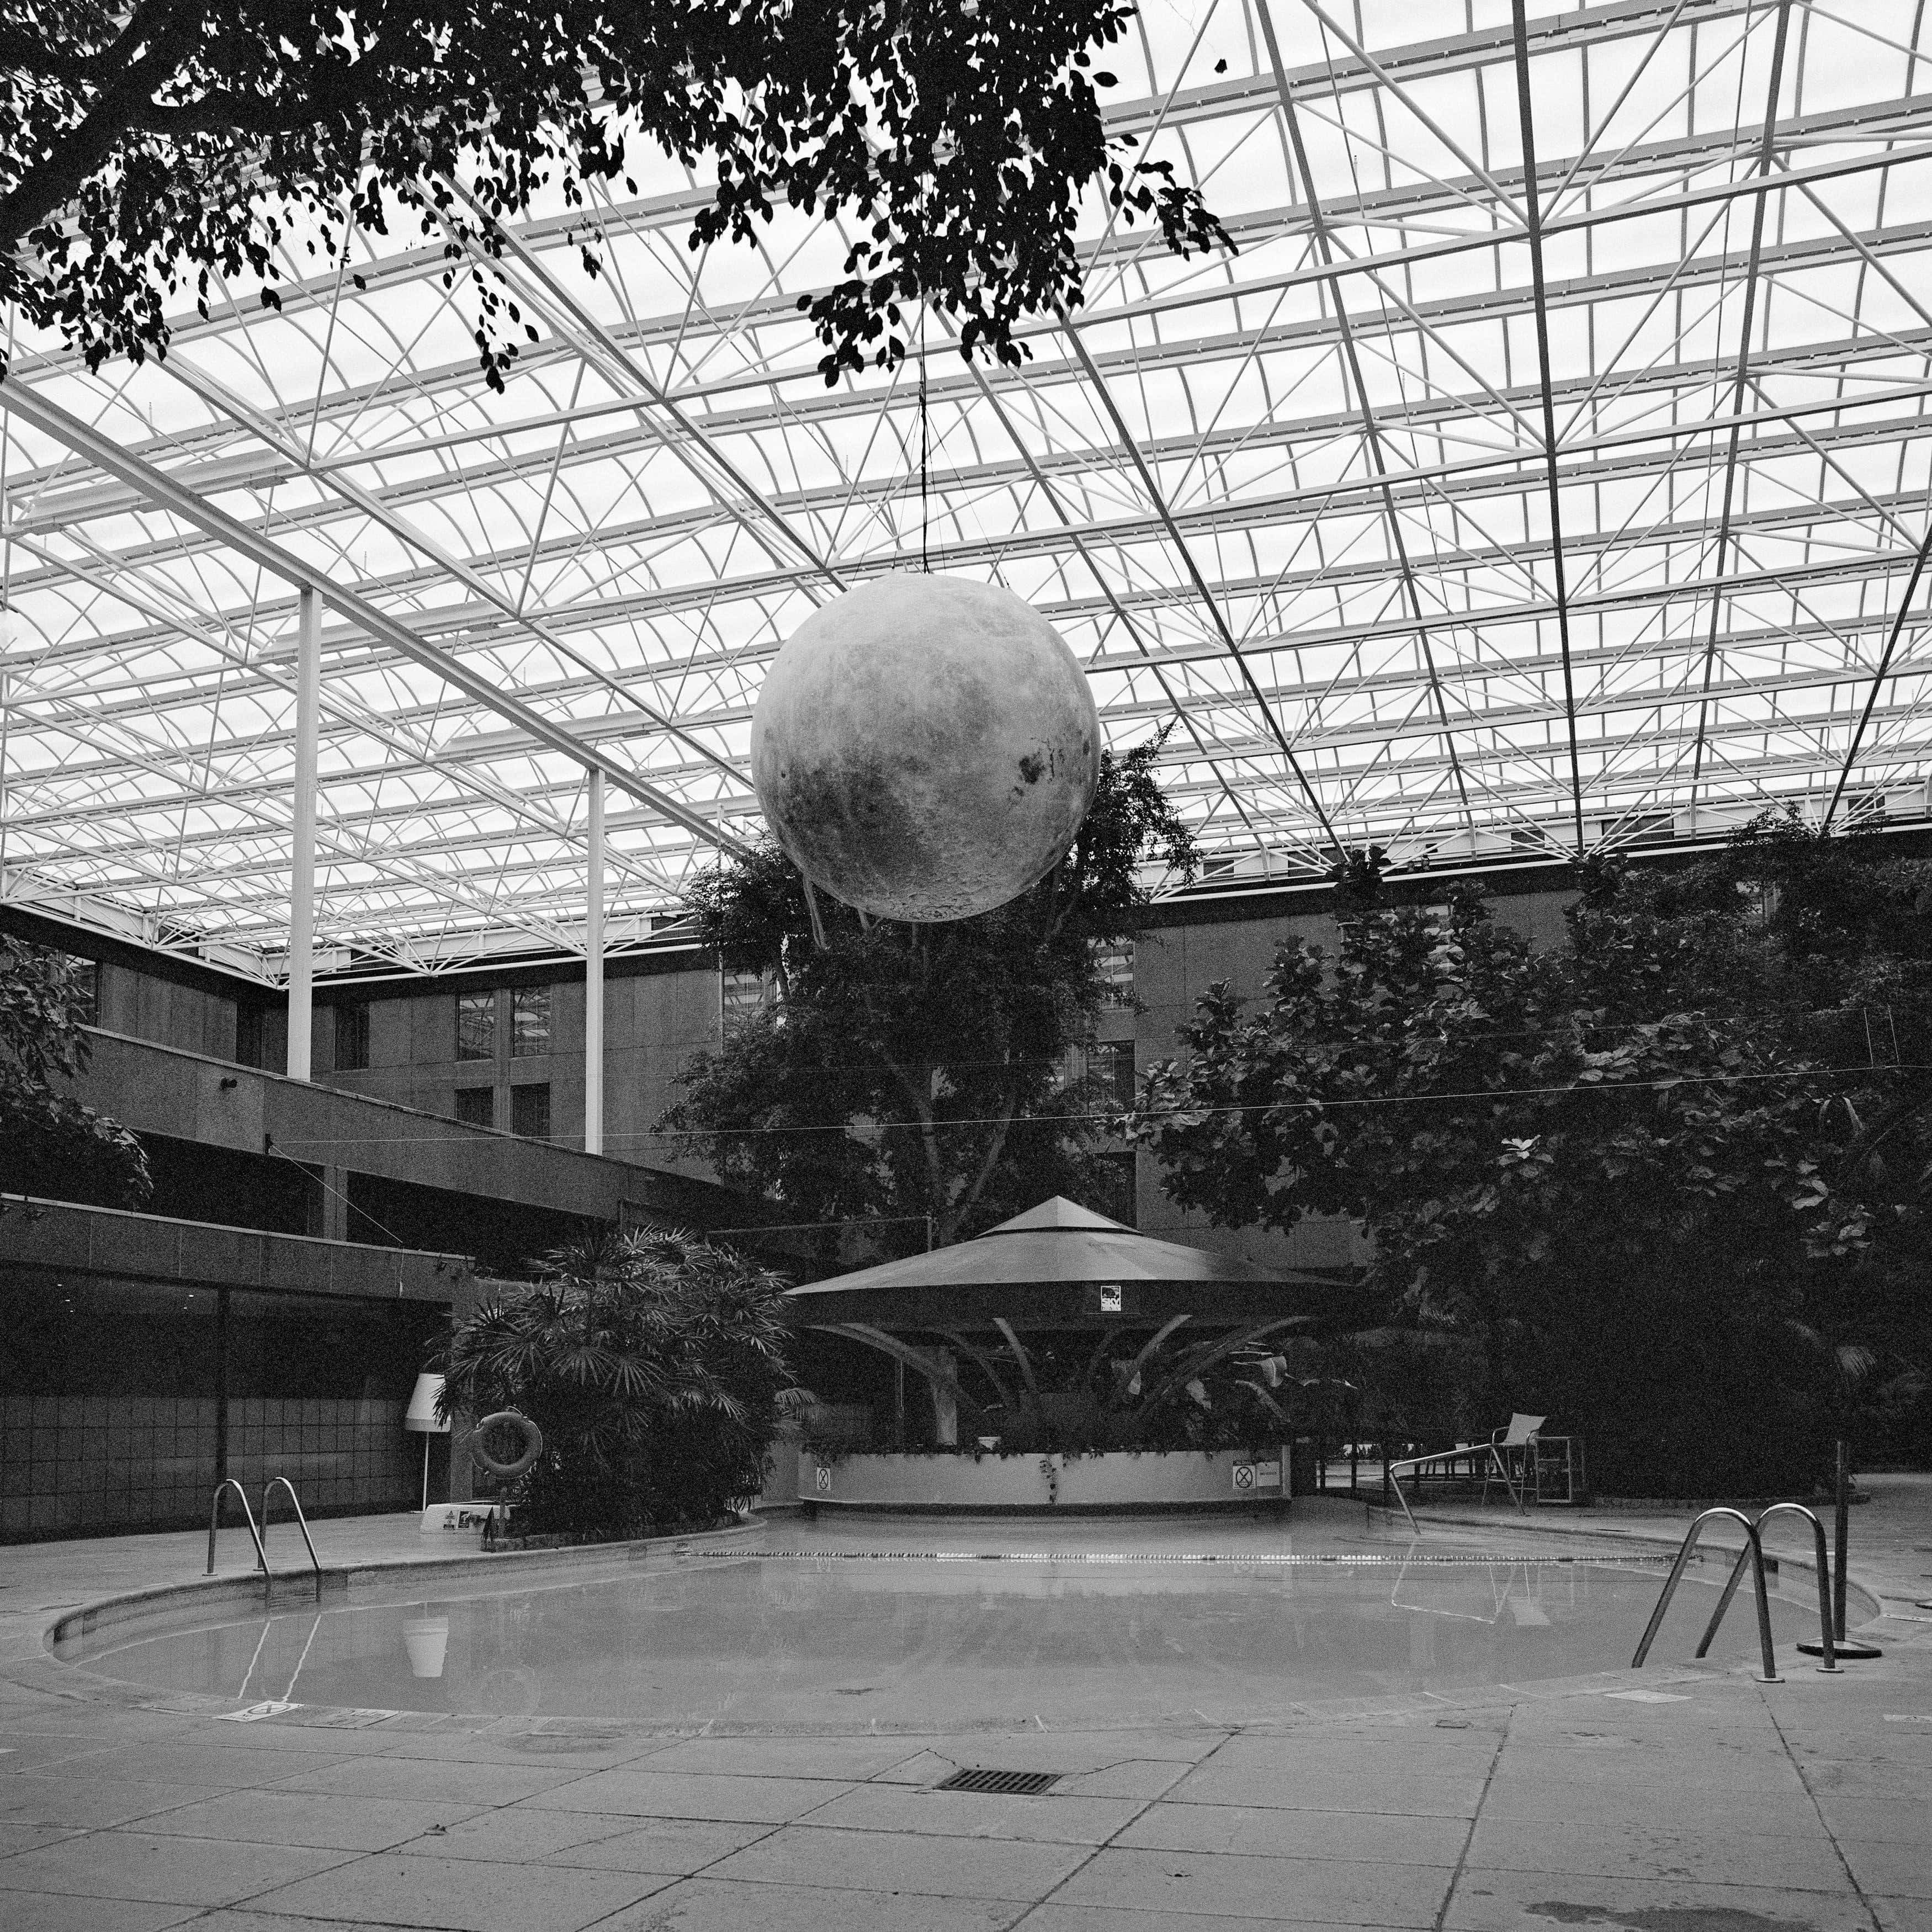 Fotografia architettonica quadrata in bianco e nero: Piscina d'albergo con sfera lunare